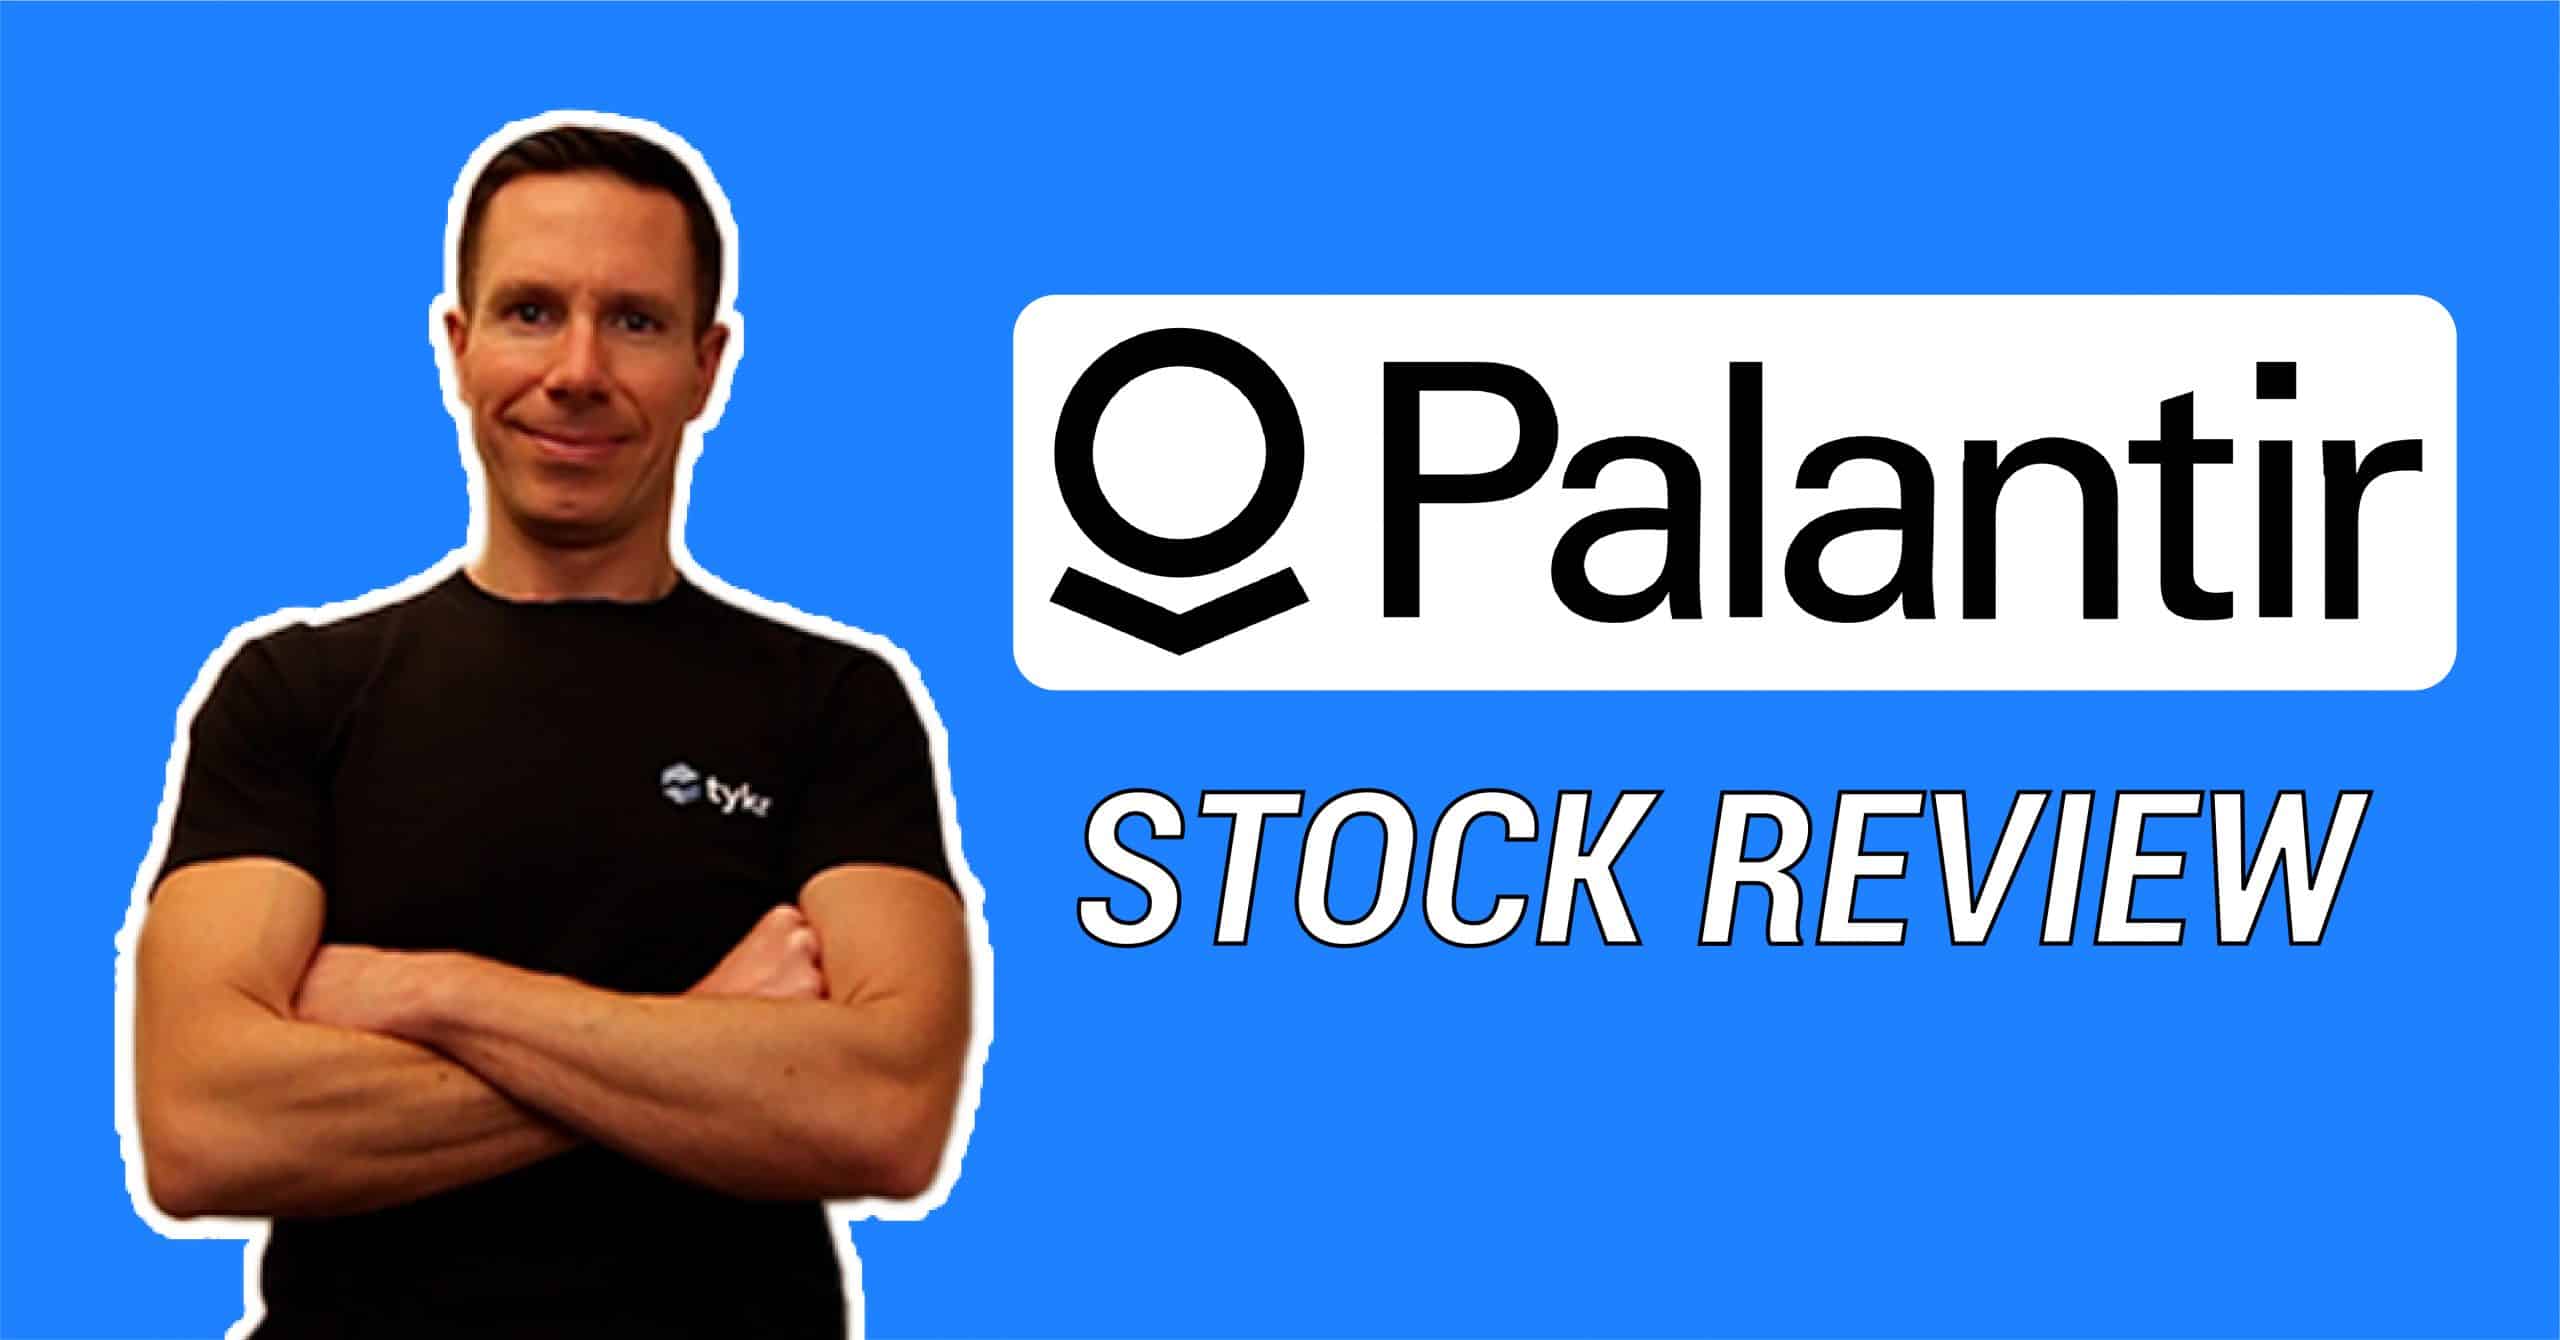 Palantir Stock Review